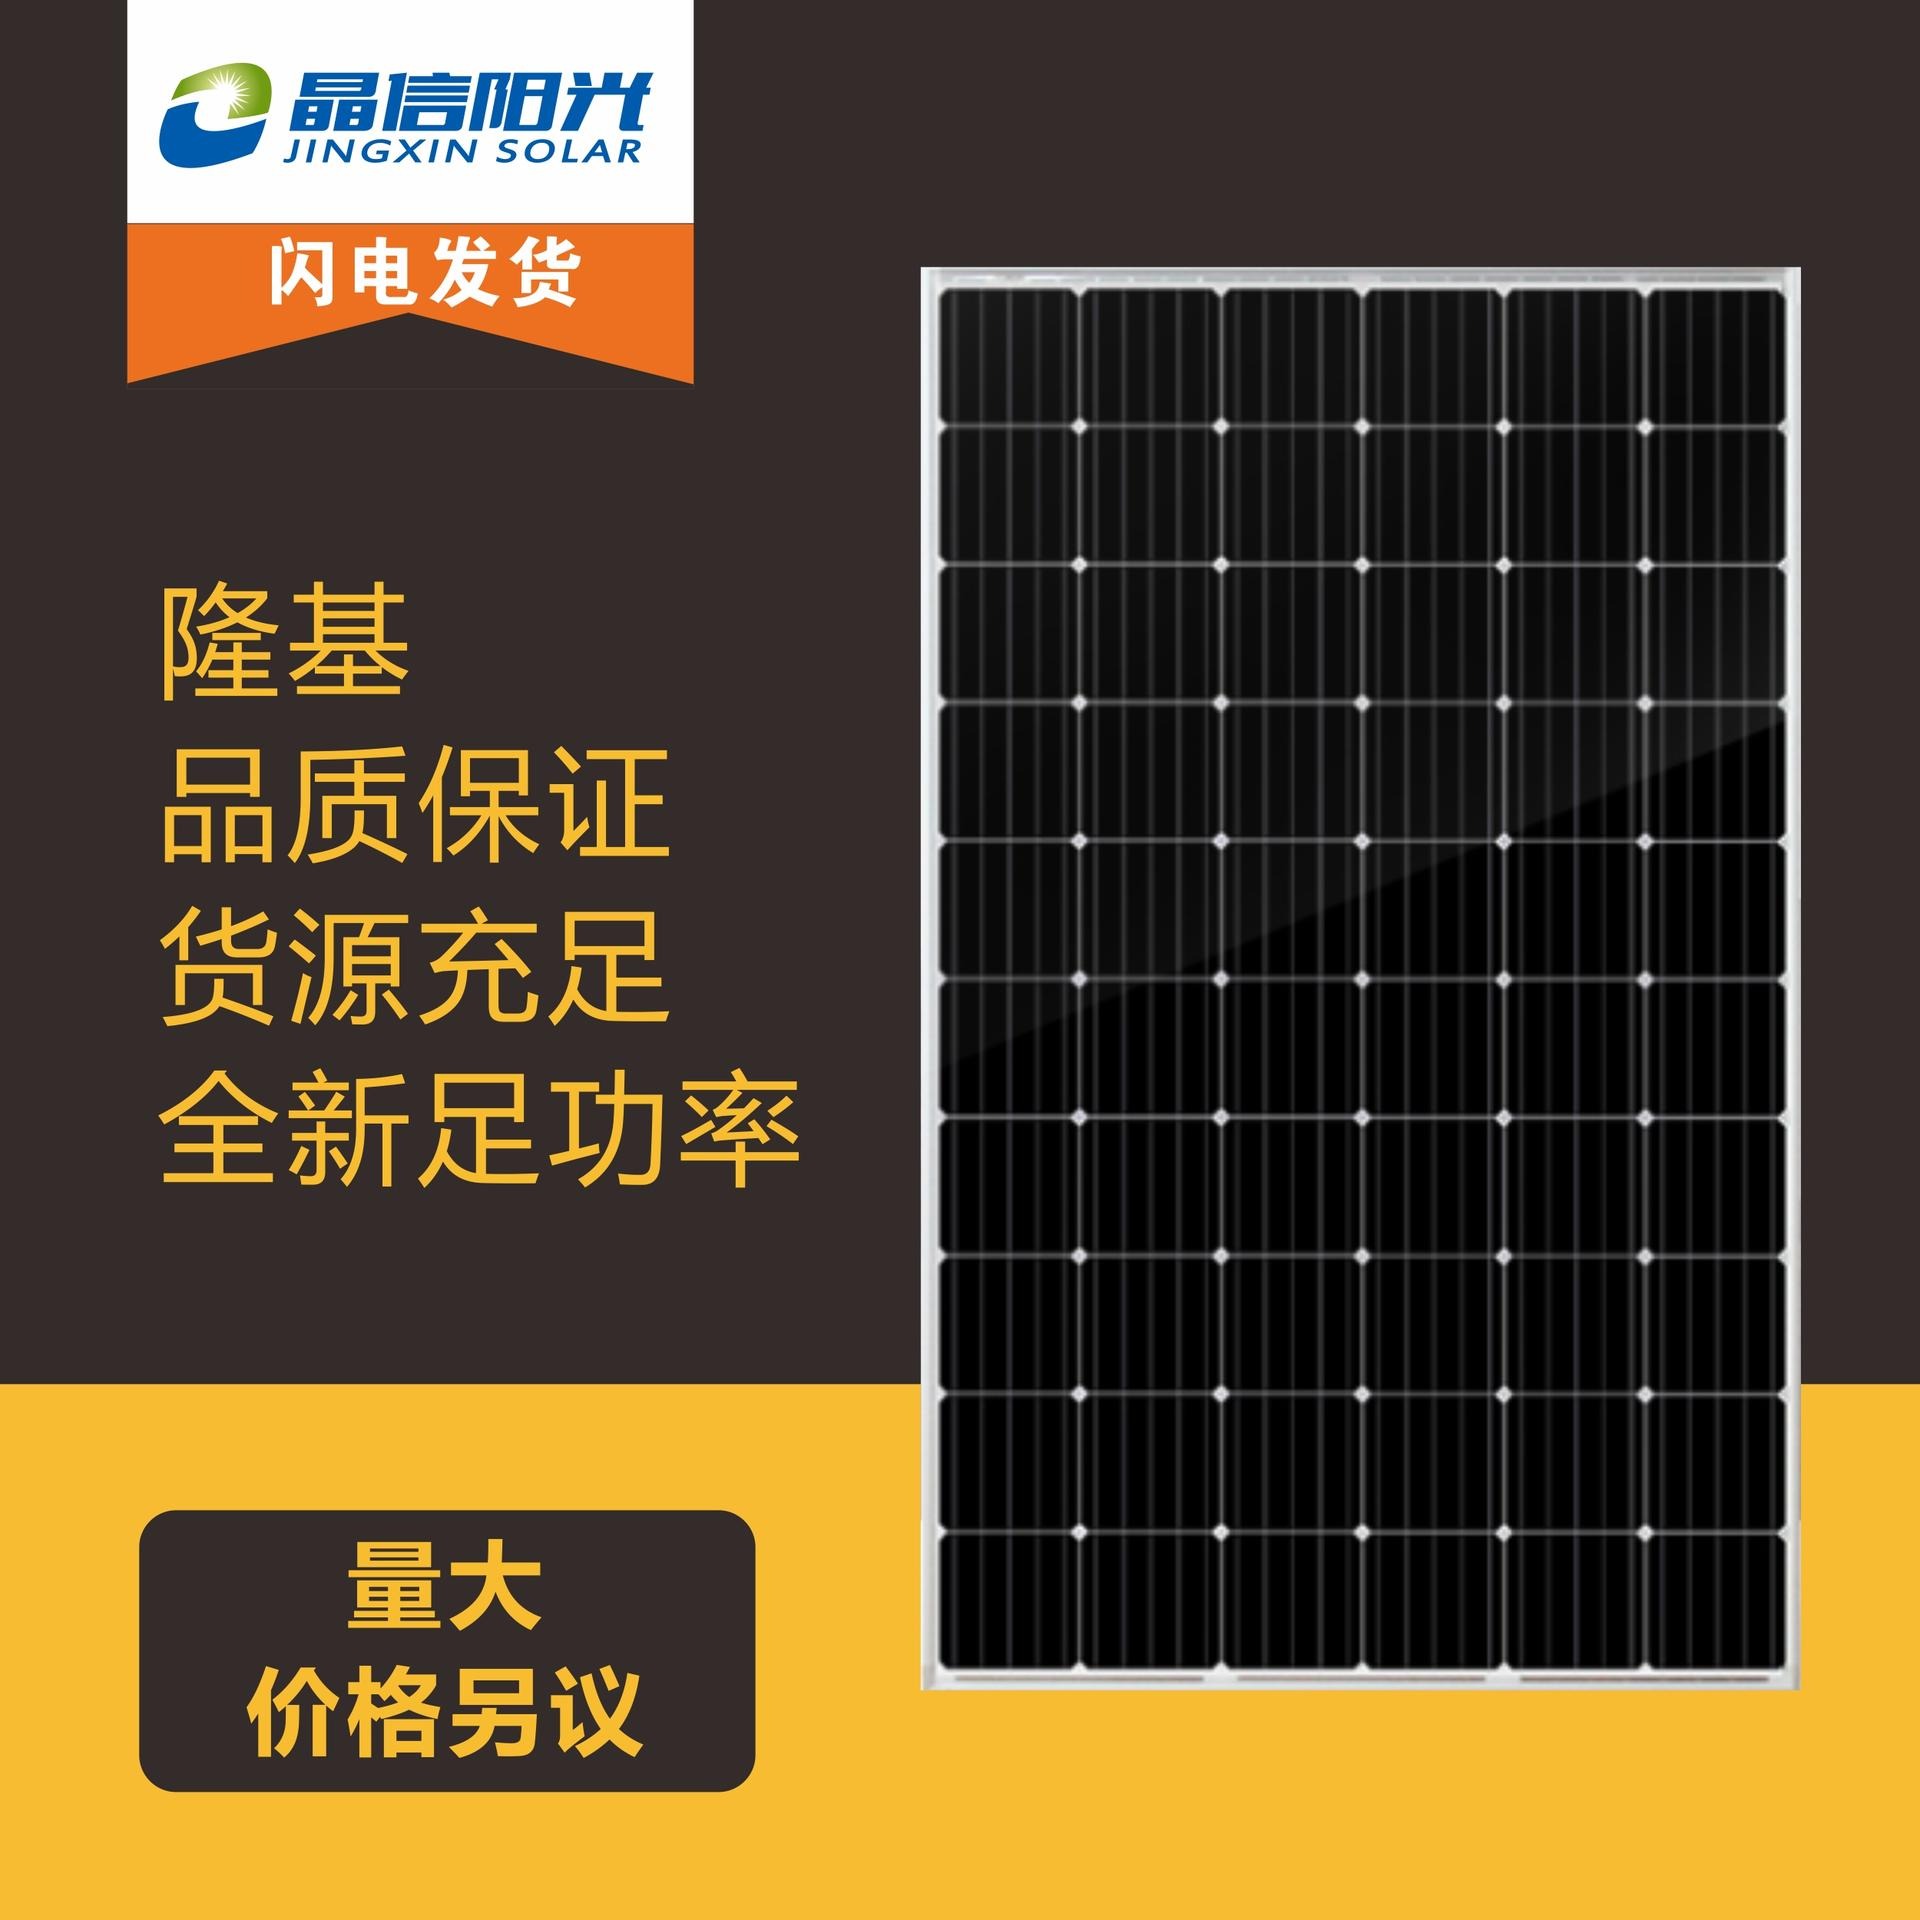 隆基光伏板 单晶硅光伏板 隆基455太阳能发电并网专用 光伏板 山东晶信科技 优质供应商 绿色能源太阳能发电图片